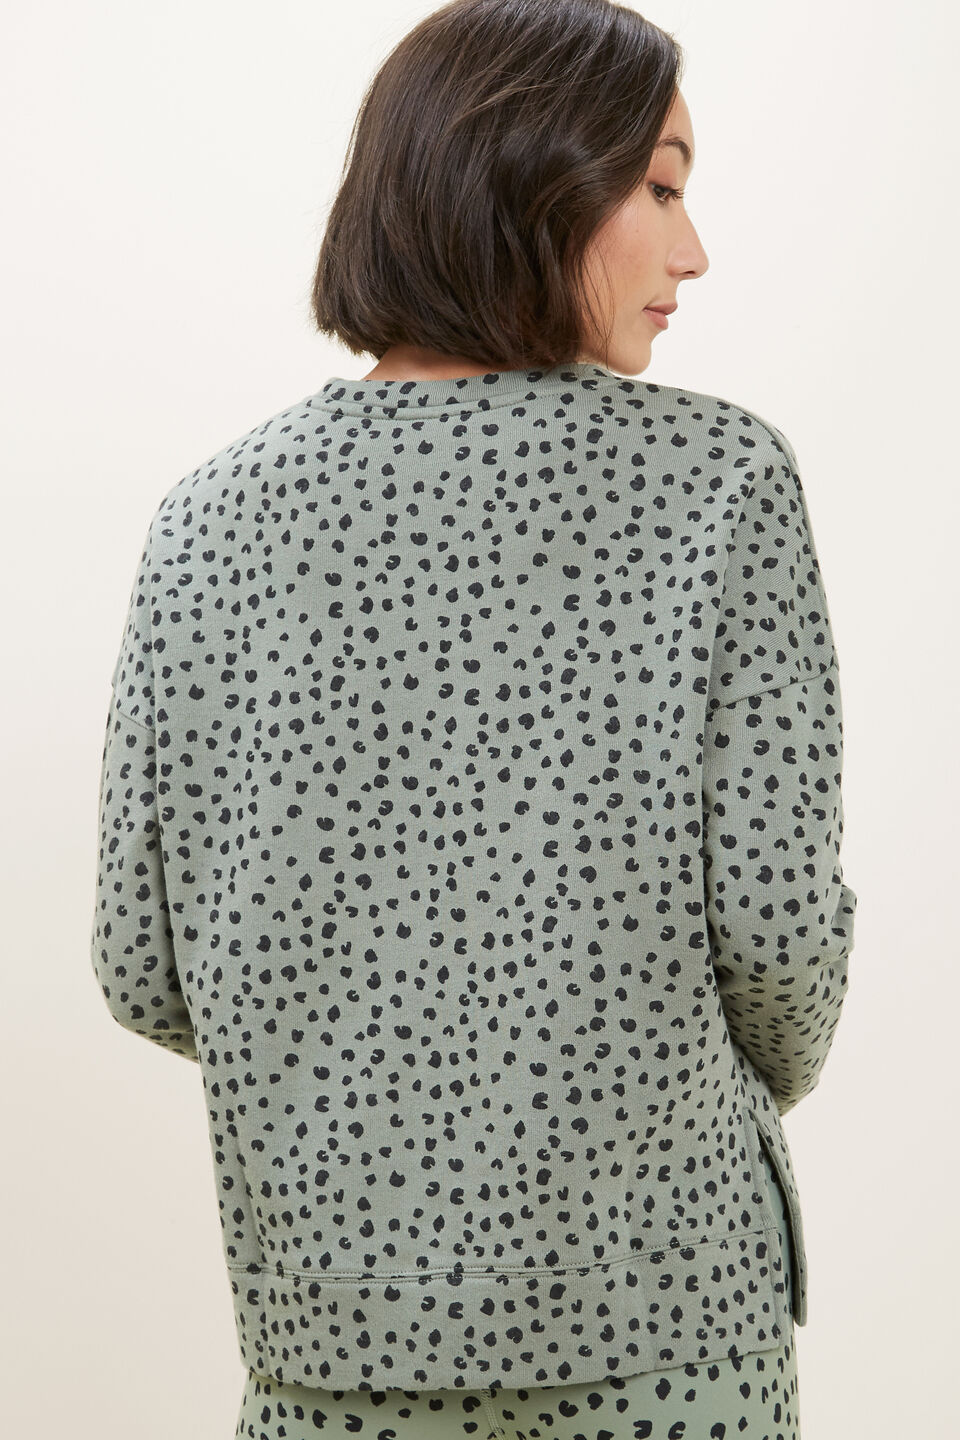 Ocelot Sweater  Multi Spot